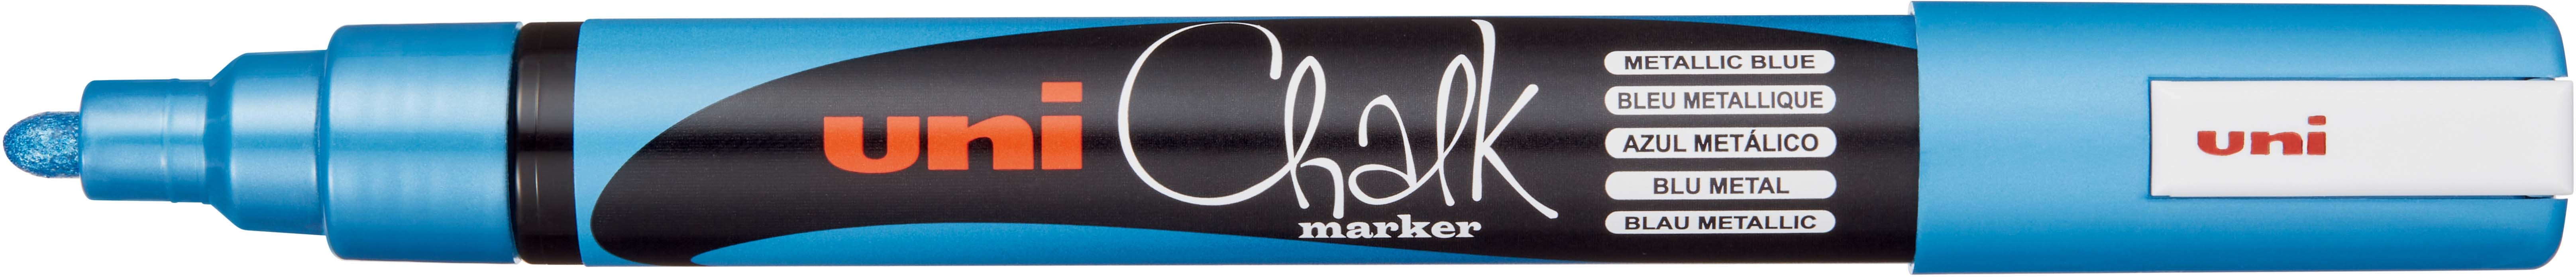 UNI-BALL Chalk Marker 1.8-2.5mm PWE-5M METALLIC BLUE Metallic bleu